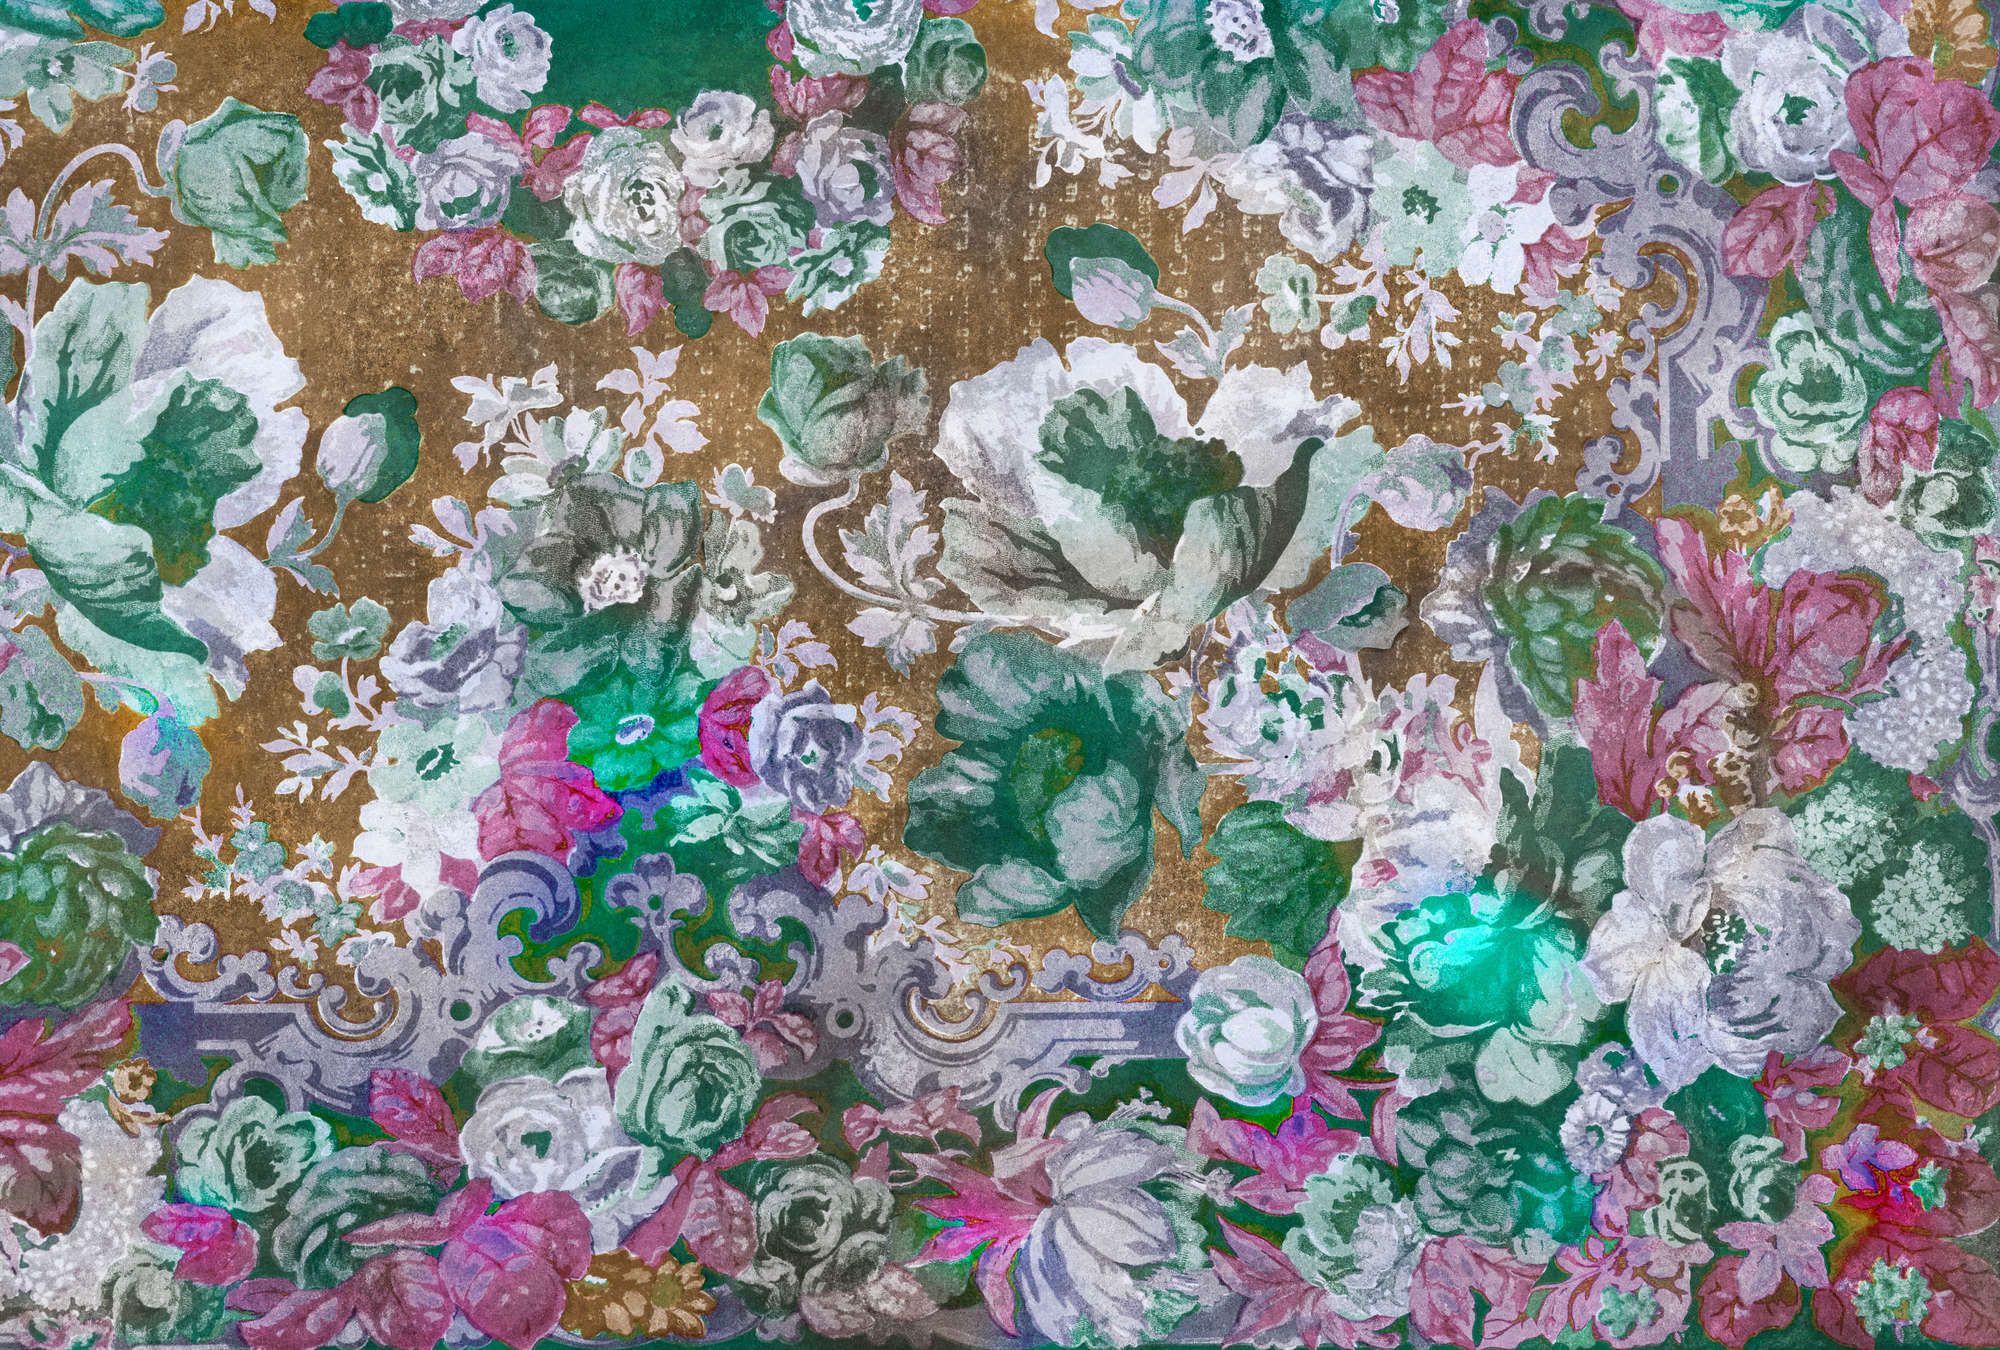             Fotomural »carmente 1« - Motivo floral de estilo clásico sobre una textura de yeso vintage - Coloreado | Material sin tejer liso, ligeramente nacarado
        